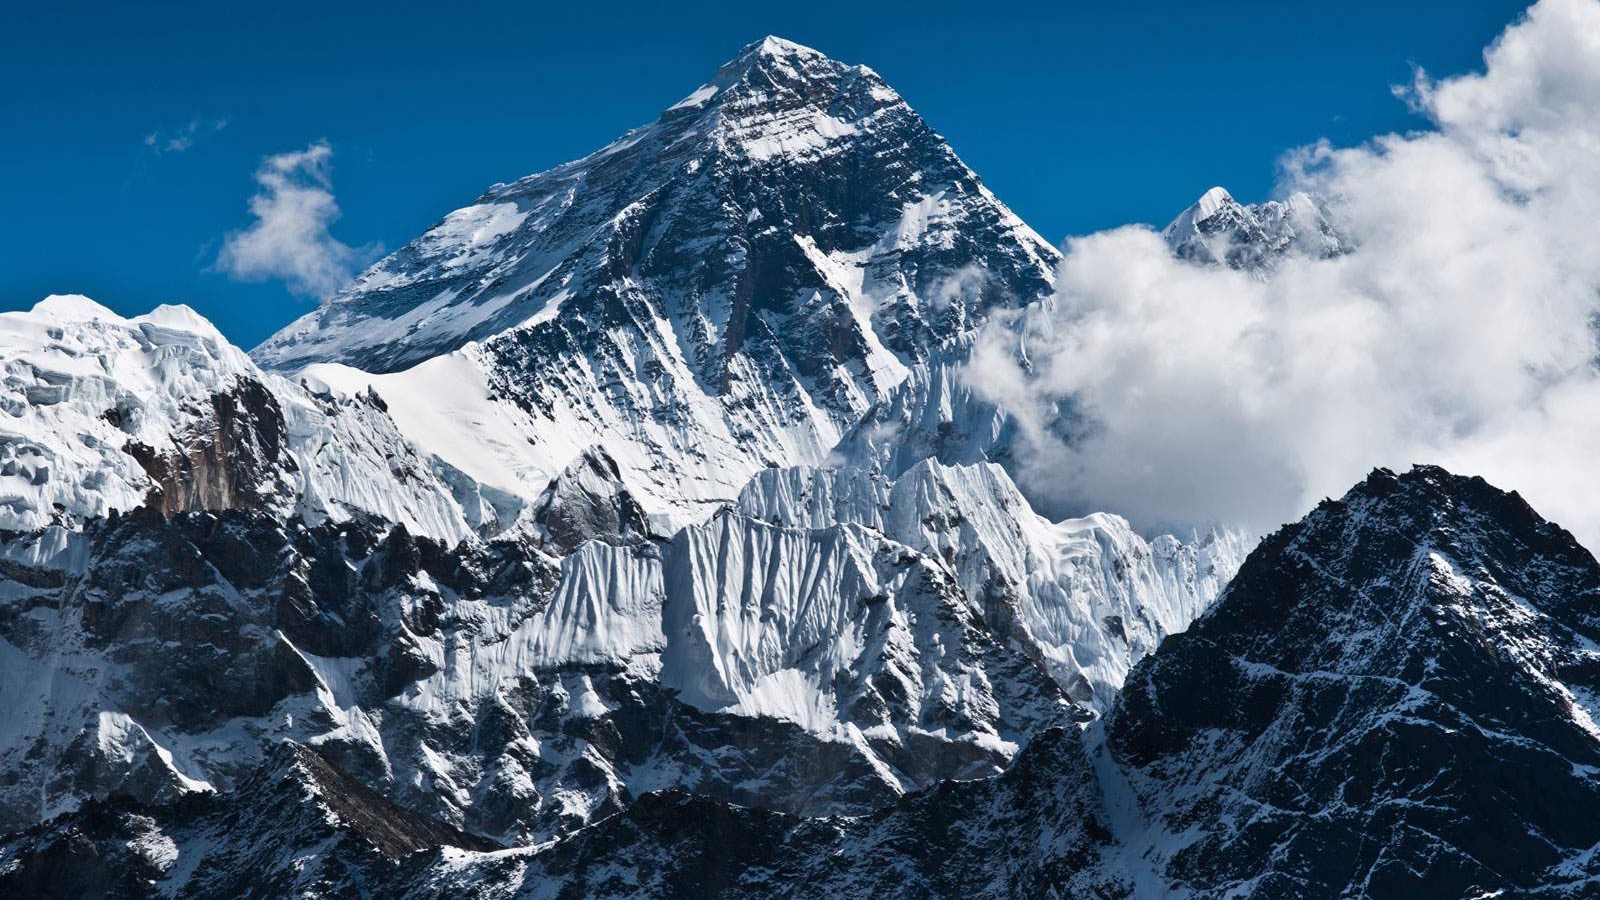 Najviši svjetski planinski vrh Mount Everest “porastao” za 73 centimetra